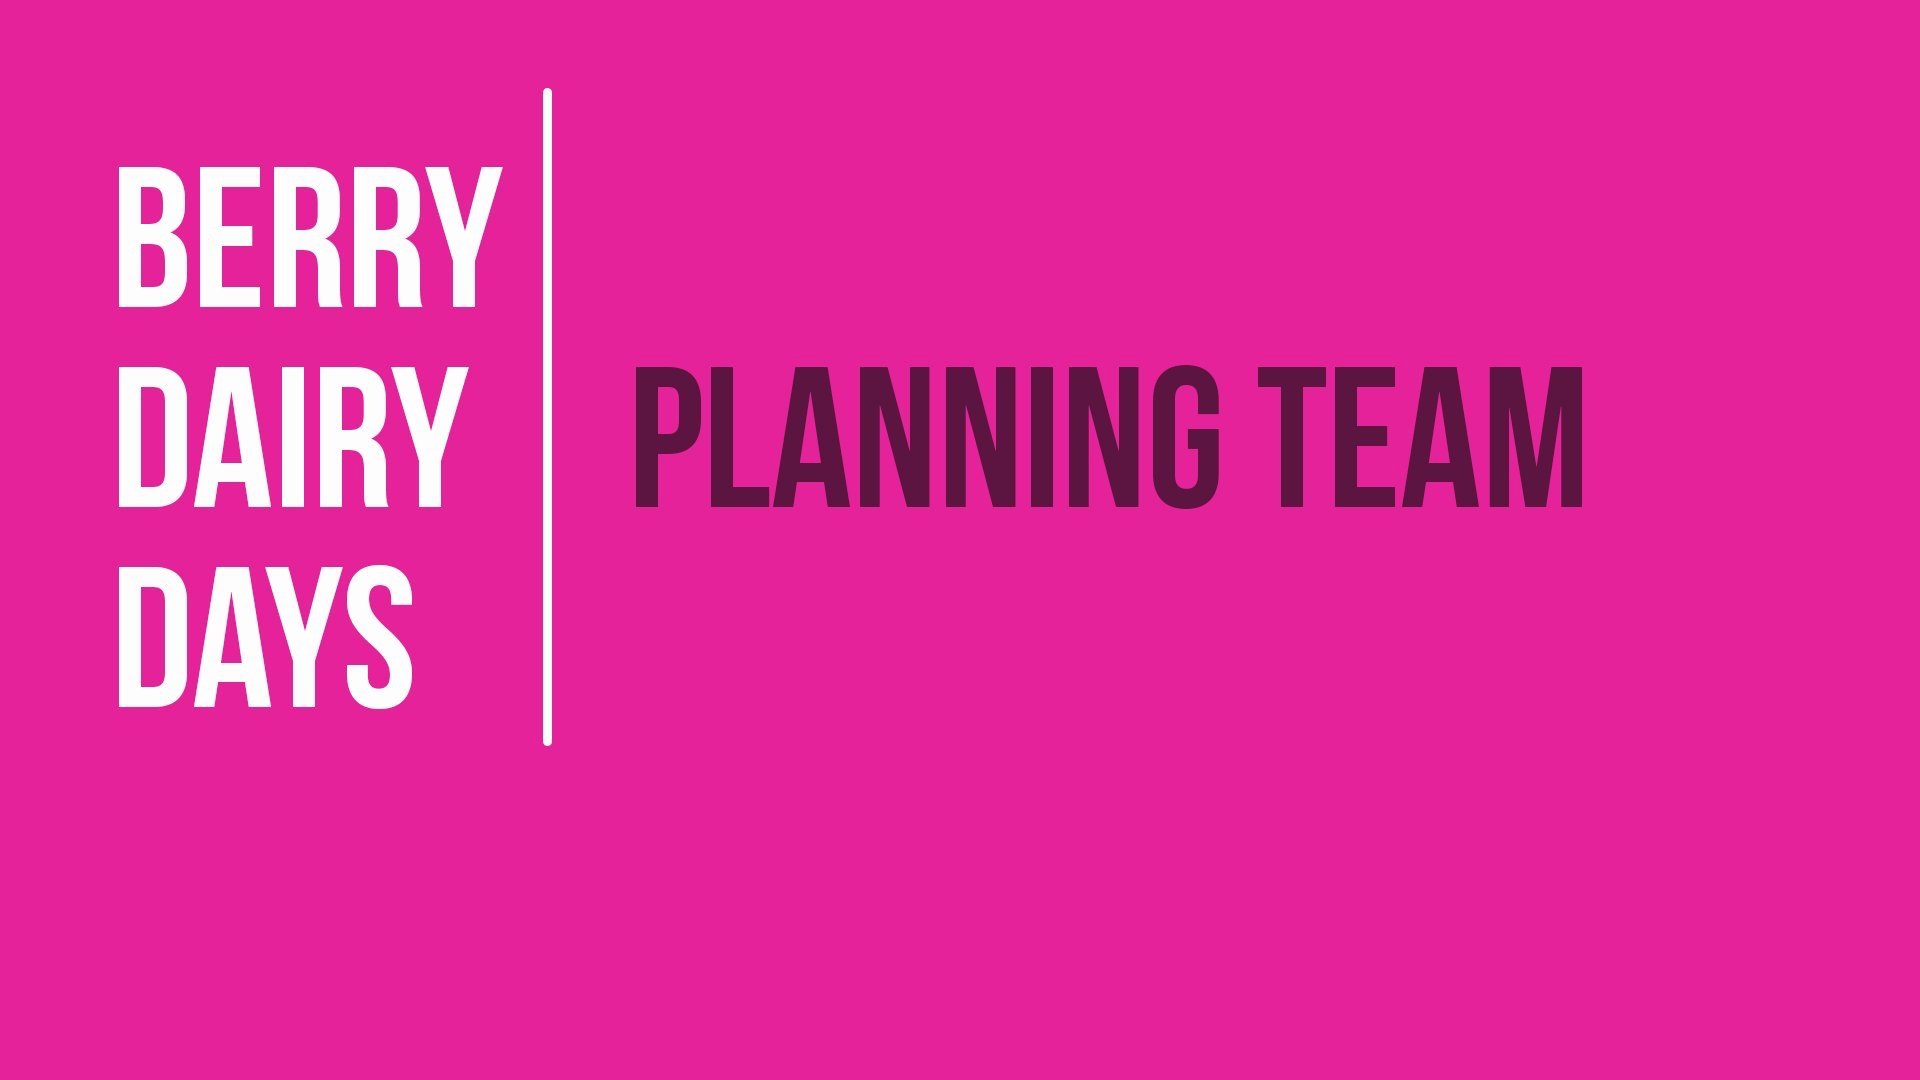 Berry+Dairy+Days+Planning+Team.jpg